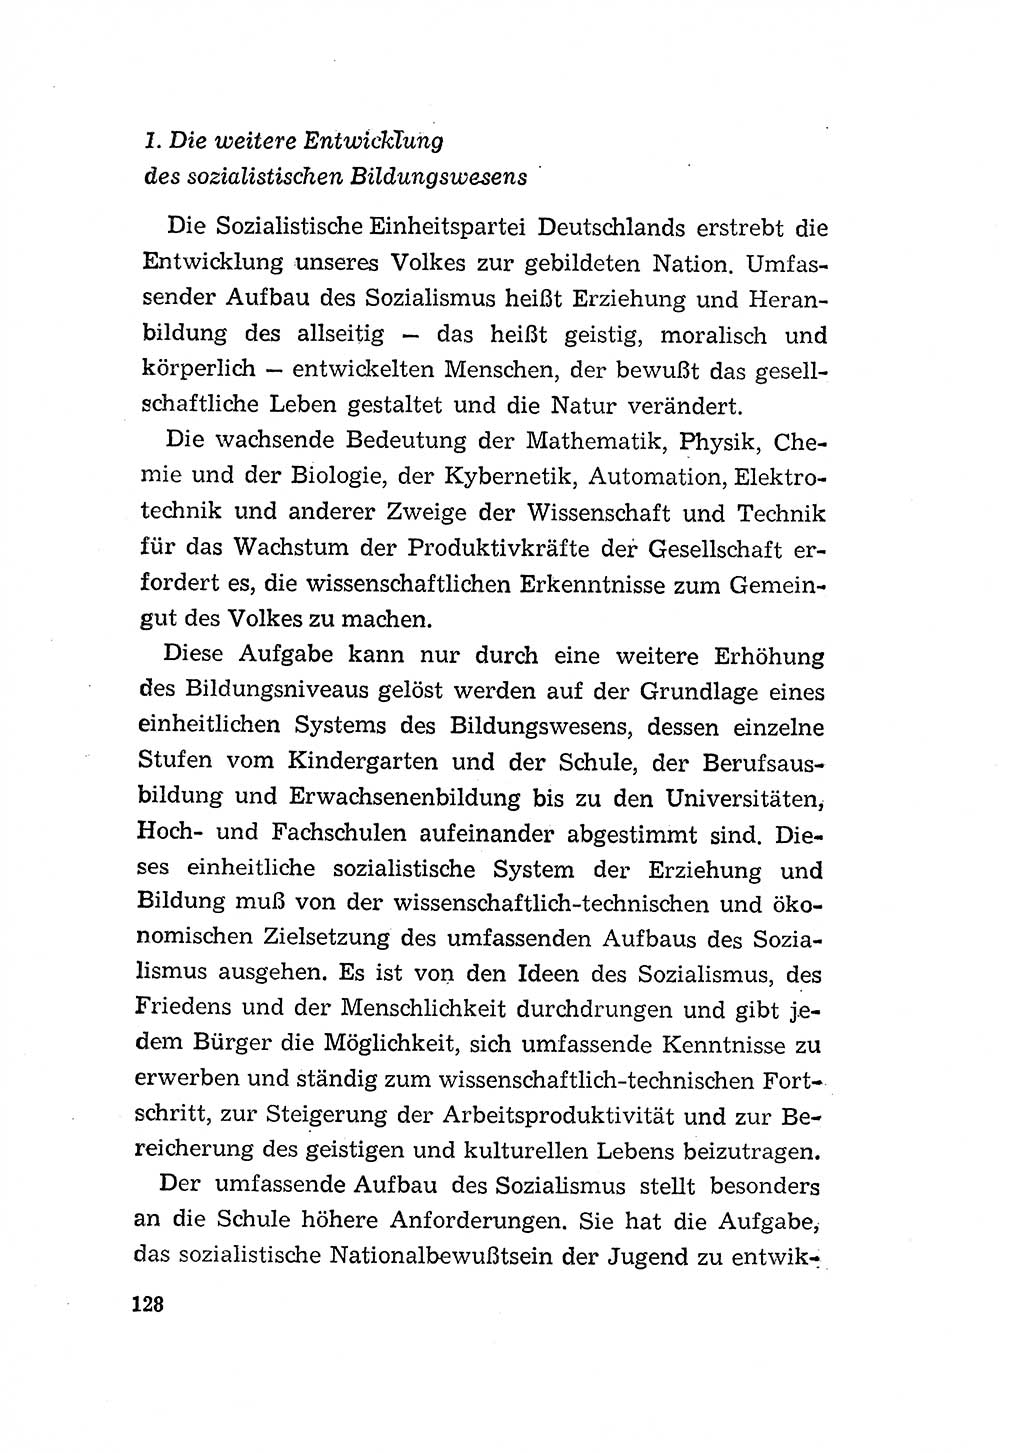 Programm der Sozialistischen Einheitspartei Deutschlands (SED) [Deutsche Demokratische Republik (DDR)] 1963, Seite 128 (Progr. SED DDR 1963, S. 128)